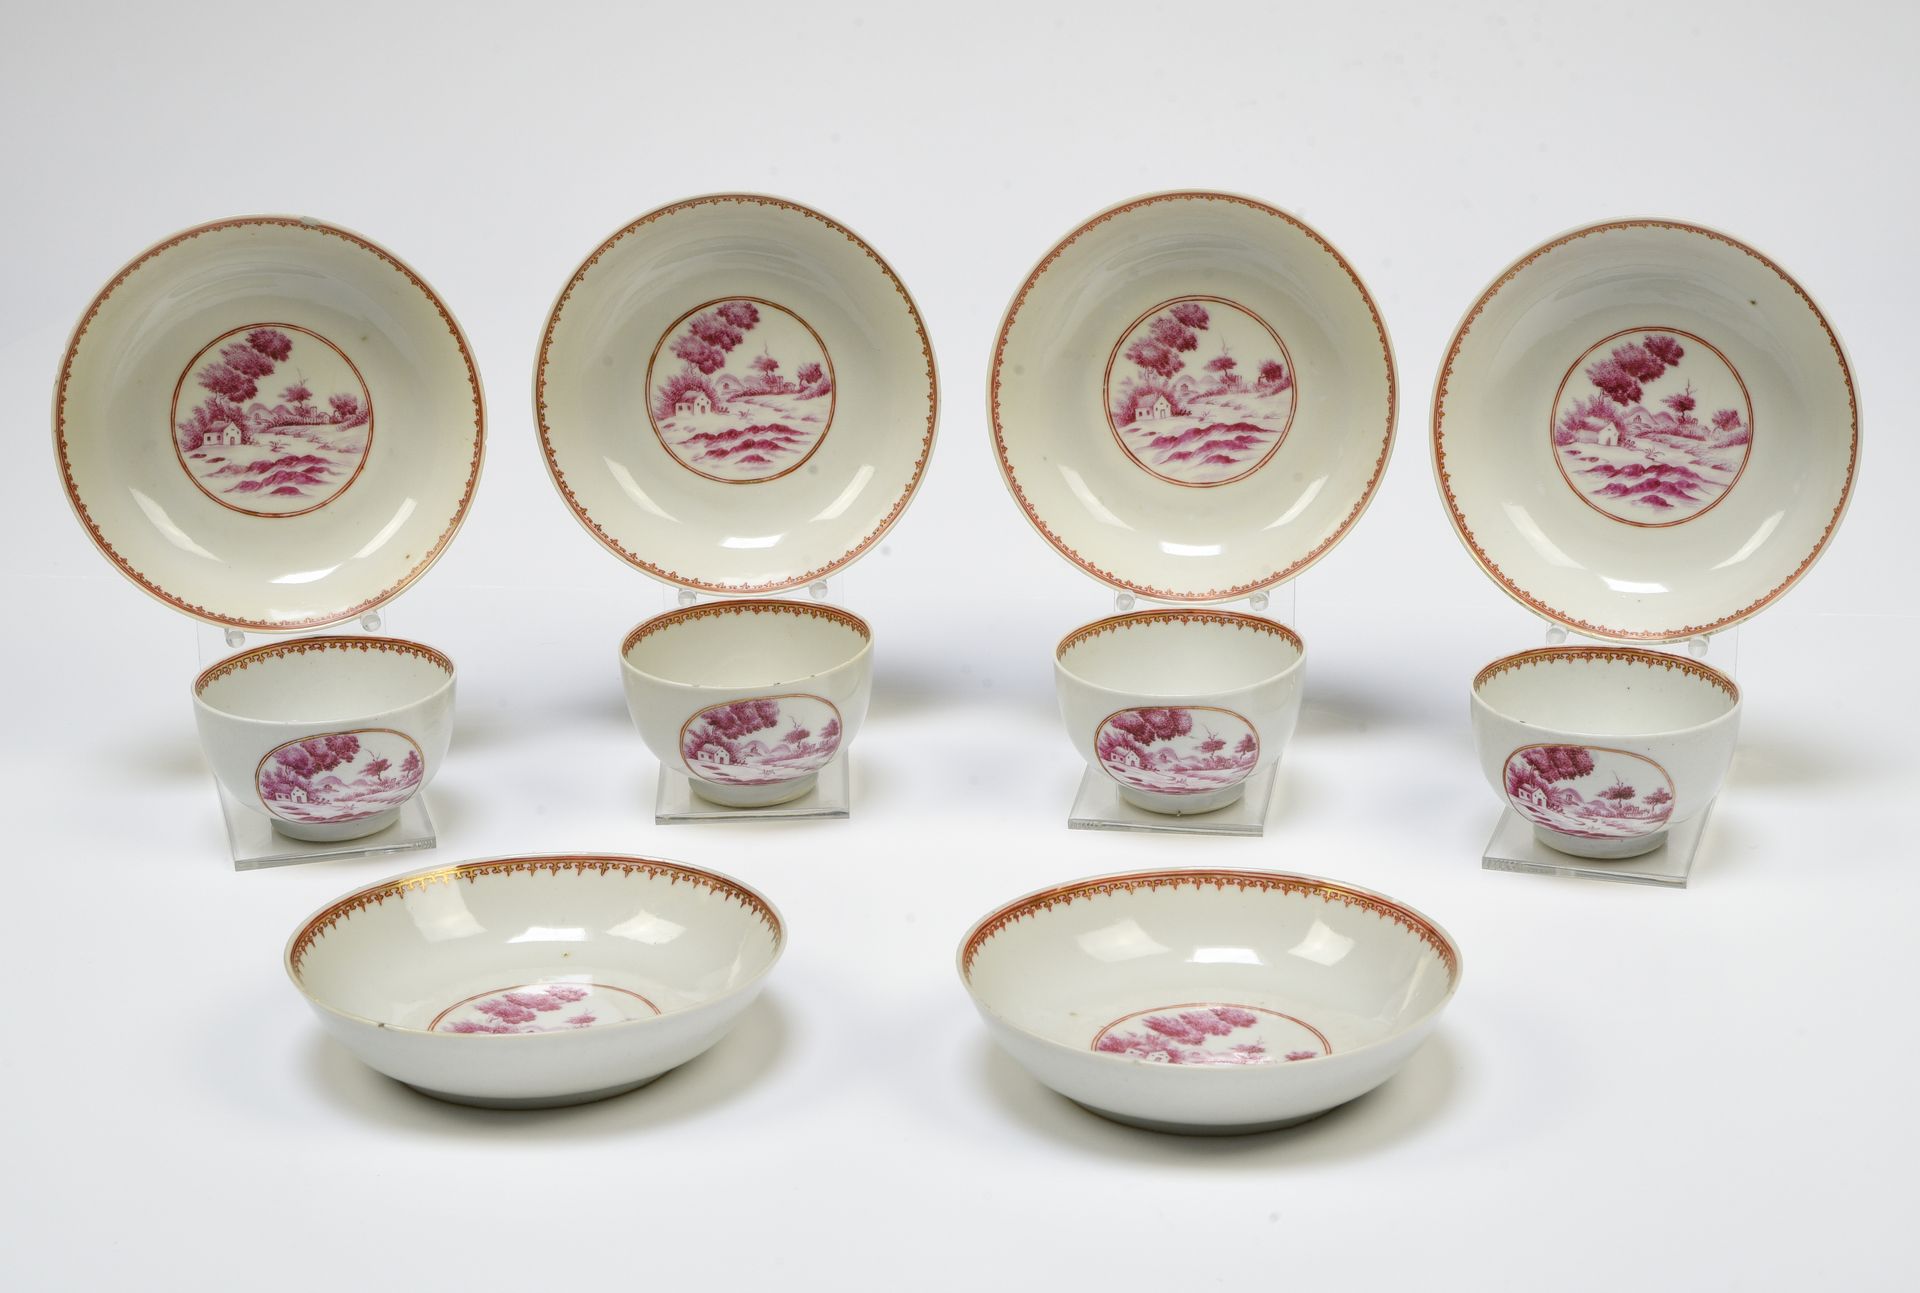 Null 中国，印度公司--乾隆时期（1736-1795）。

套装包括四个杯子和六个展示架



瓷器中用粉色珐琅彩装饰的欧洲风景。边缘装饰有金色搪瓷矛头的楣&hellip;